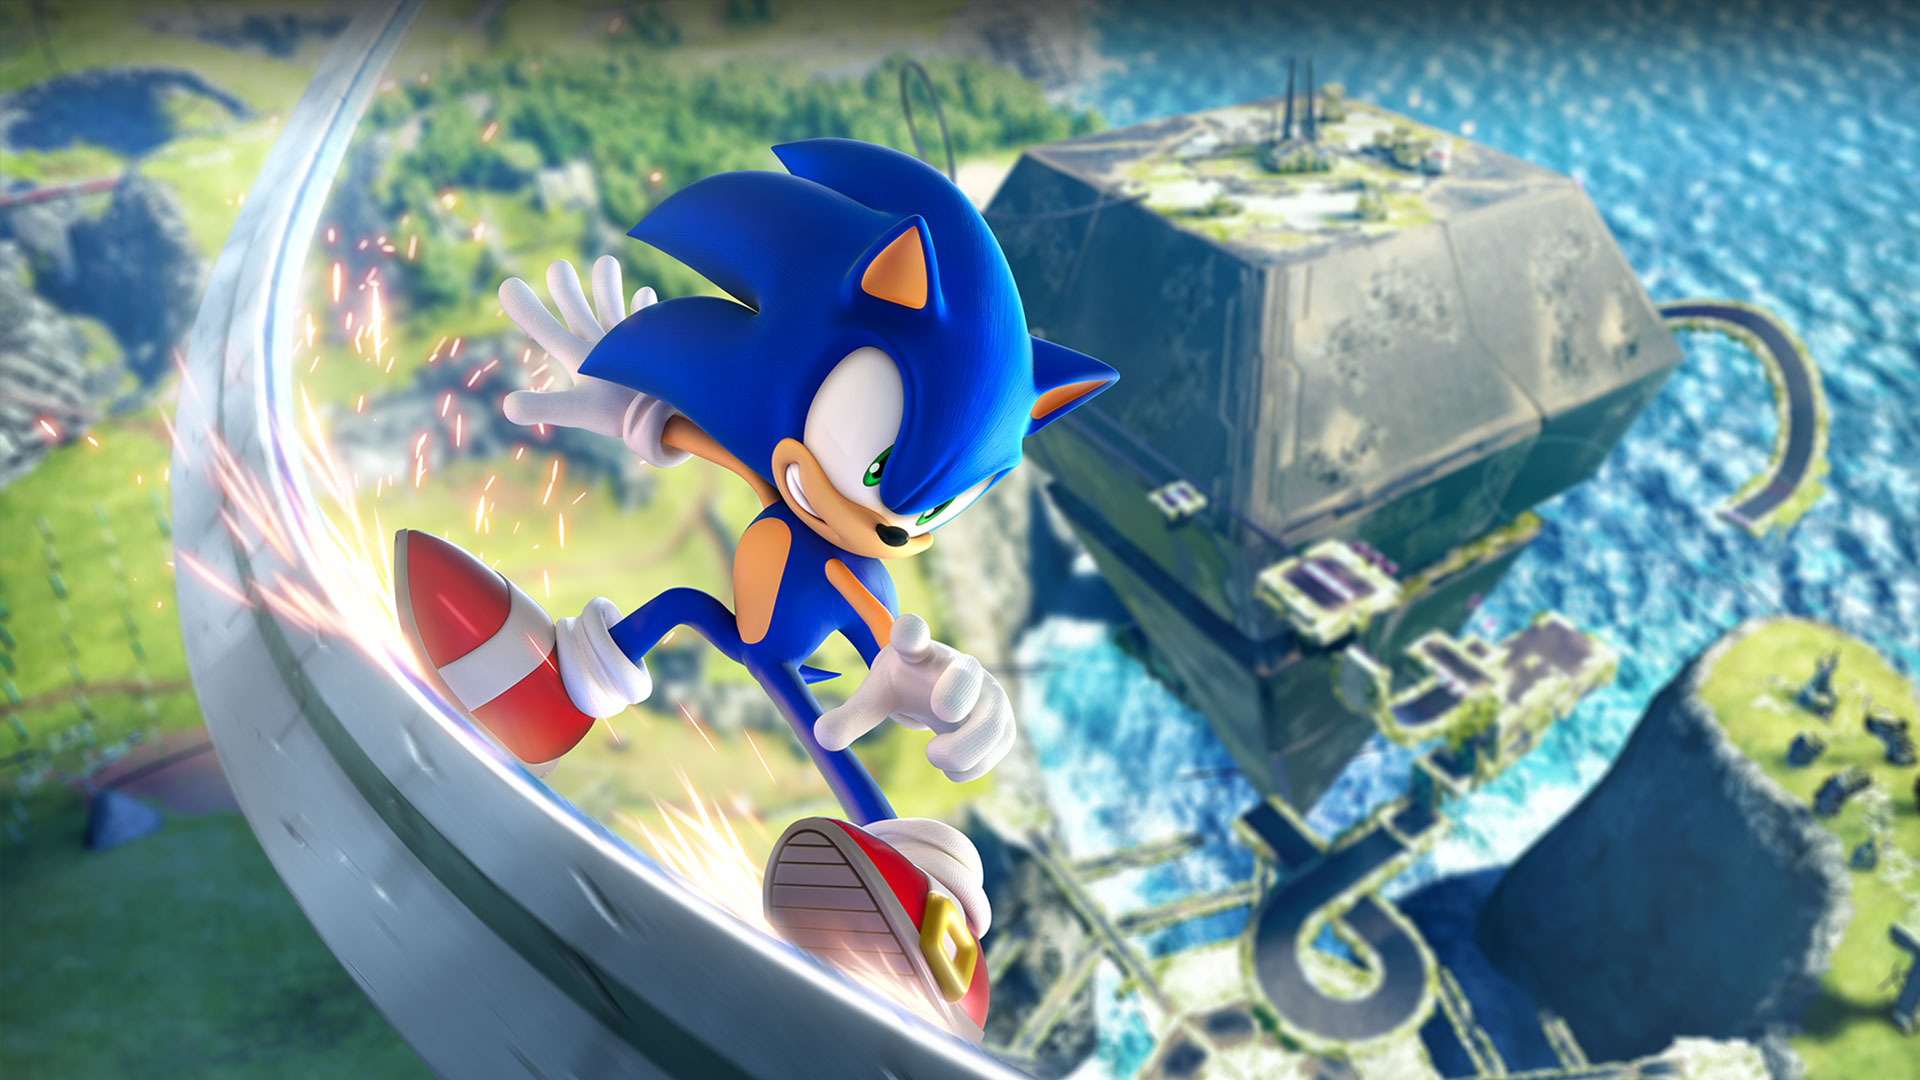 Sonic schleift mit hoher Geschwindigkeit auf einer Schiene weit über der grünen Zone.